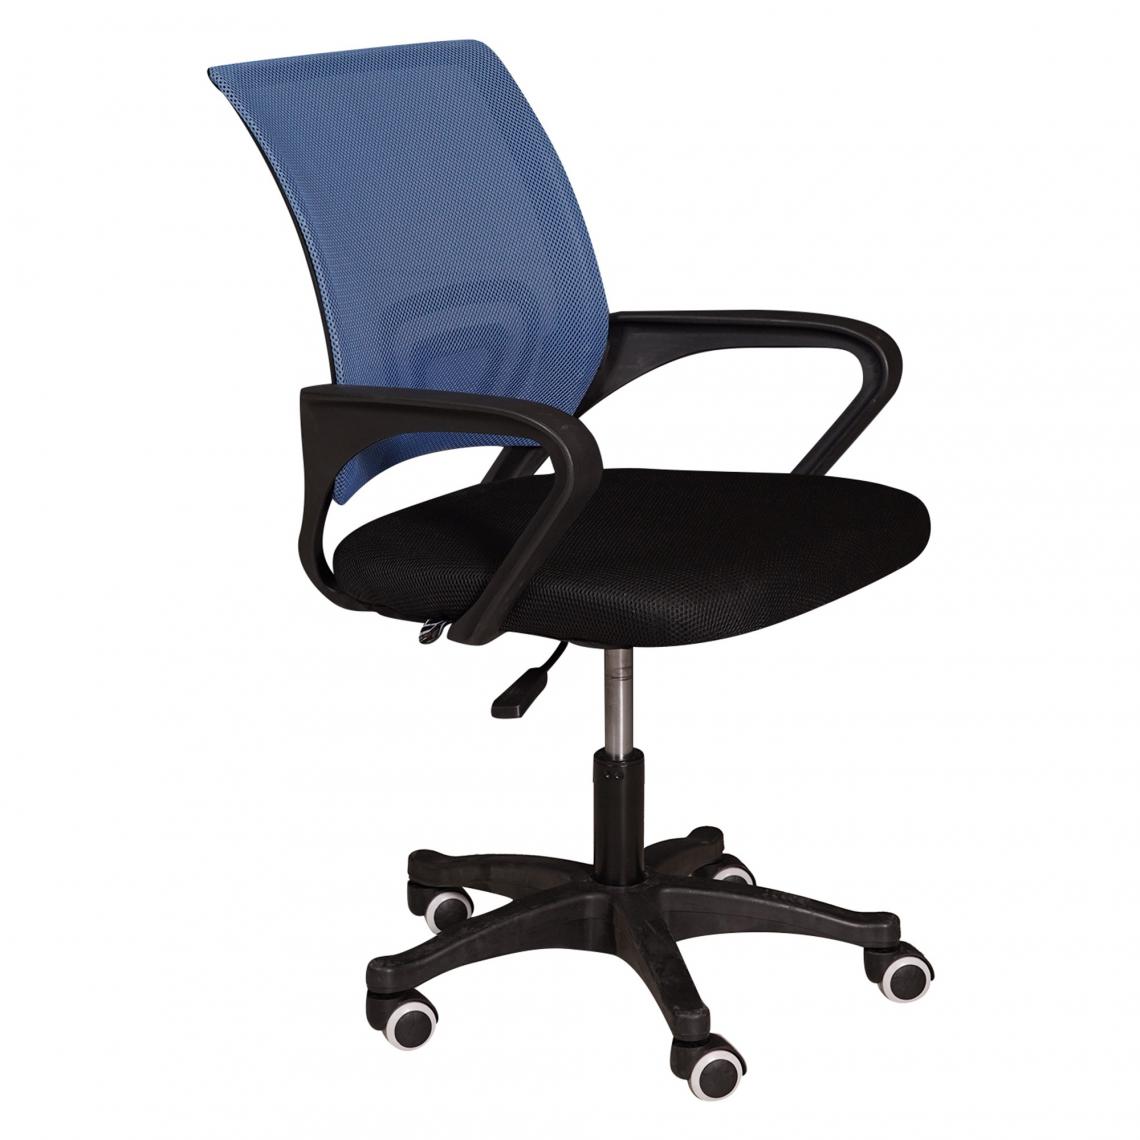 Alter - Chaise de bureau sur roulettes, Chaise relevable avec accoudoirs, Chaise en tissu rembourré avec dossier en résille, cm 62x50h84 / 93, Couleur Noir et Bleu - Chaises